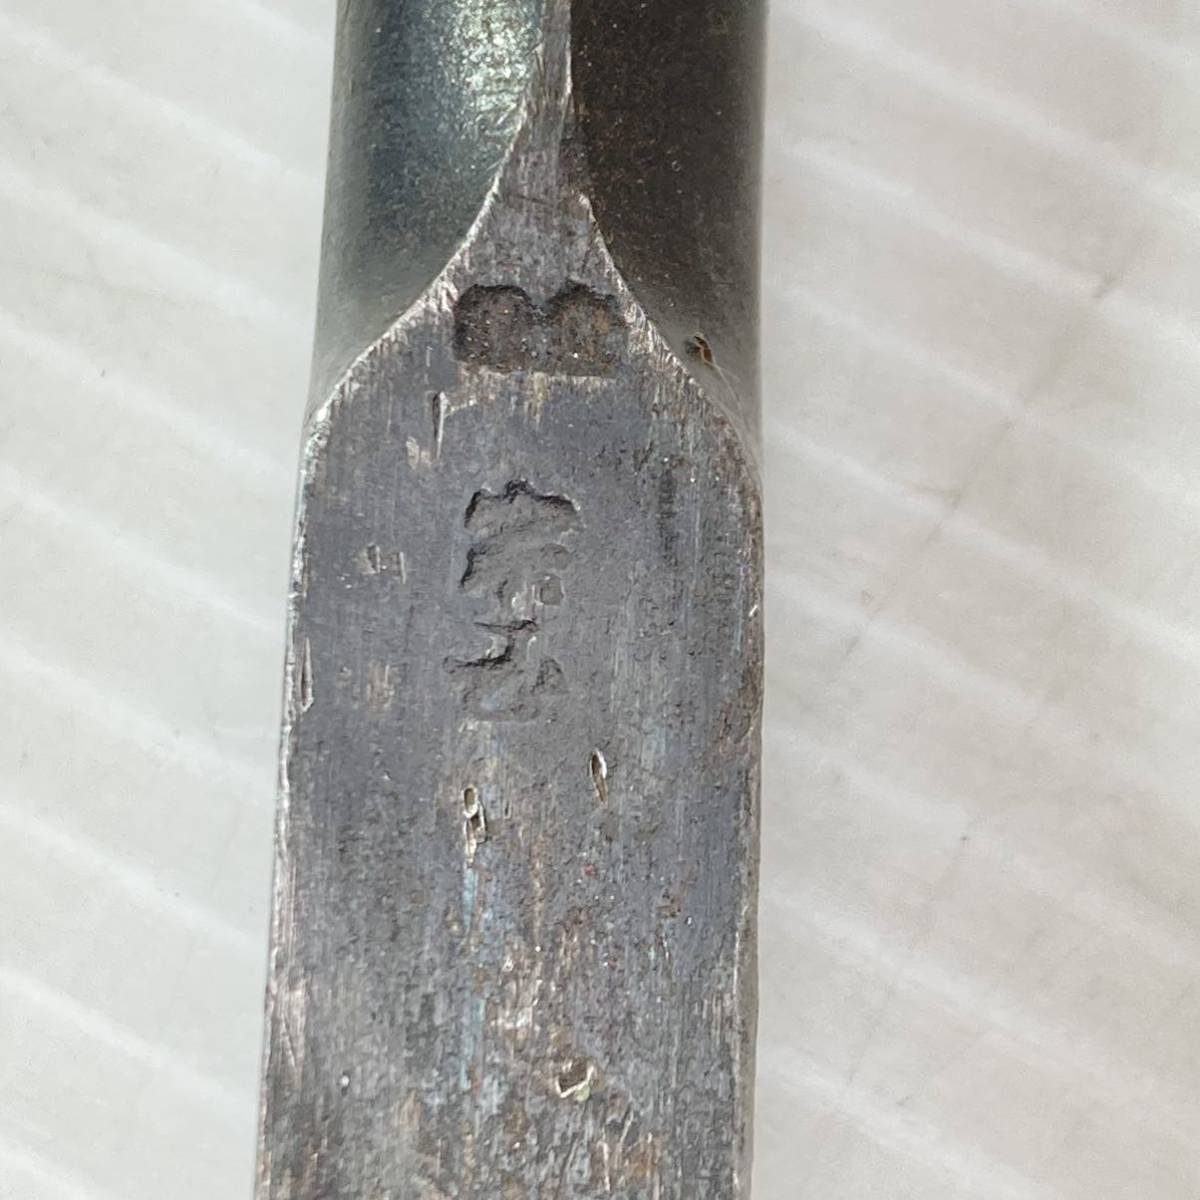 .?. блохи только плотничный инструмент лезвие ширина 15mm старый инструмент работник инструмент металлический материал сталь 